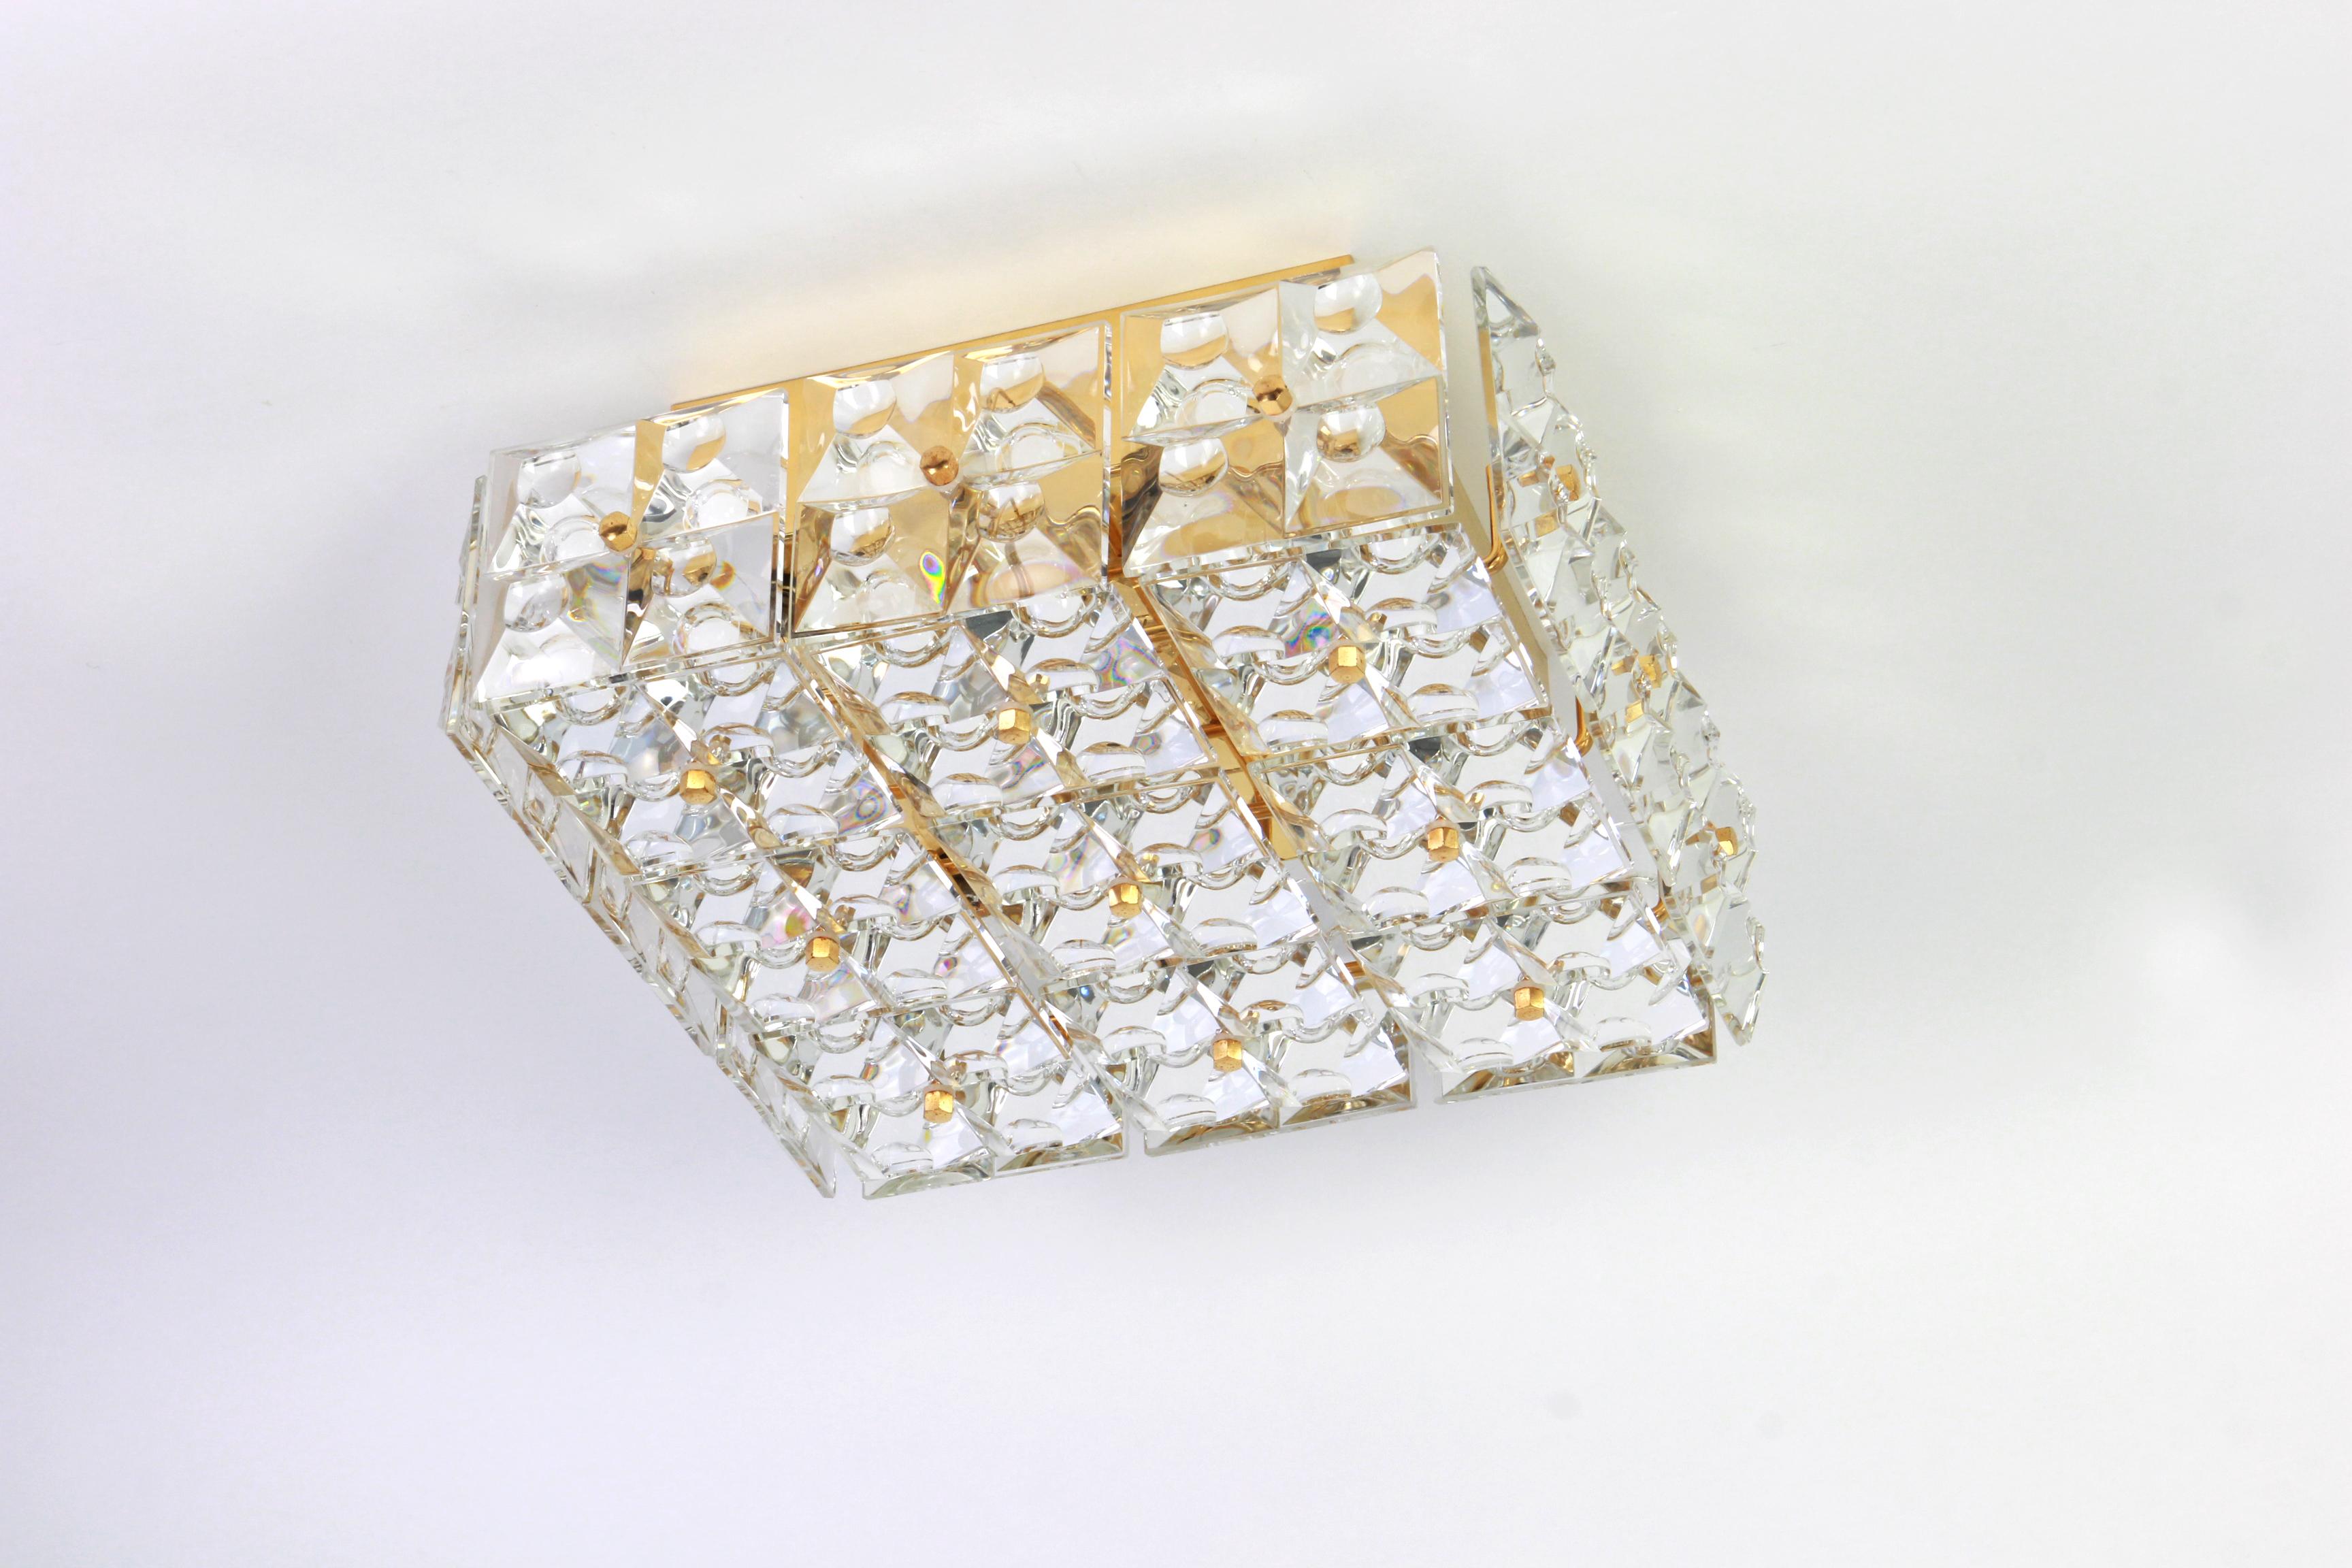 Eine atemberaubende Leuchte von Kinkeldey, Deutschland, hergestellt ca. 1970-1979. Ein handgefertigtes und hochwertiges Stück. Die Leuchte ist aus Messing gefertigt und mit vielen facettierten Kristallglaselementen versehen.
Maße: Durchmesser 14.9